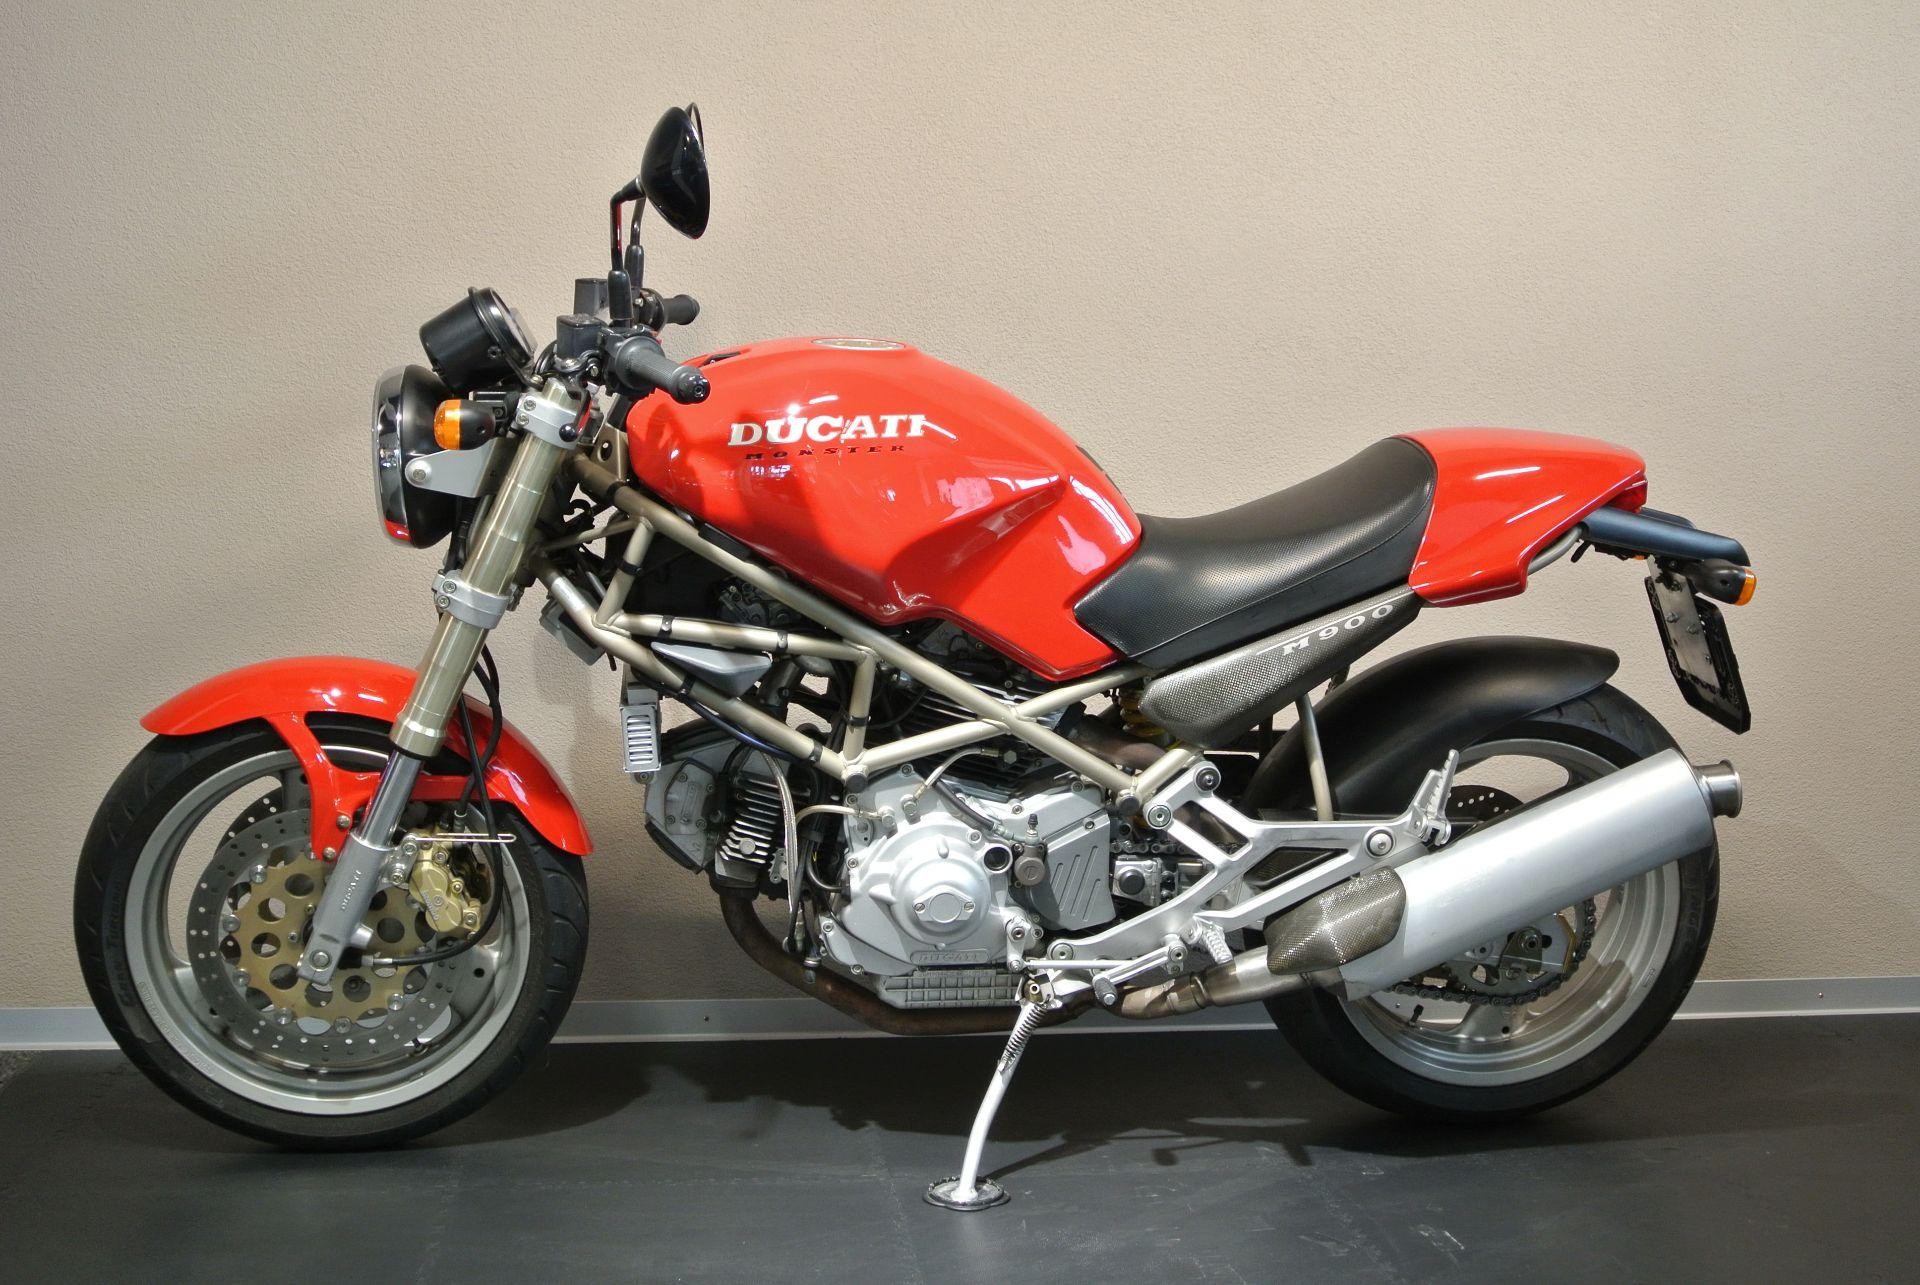 Buy Motorbike Pre Owned Ducati 900 Monster Toffarena Oensingen Id 7963901 Zeile 337